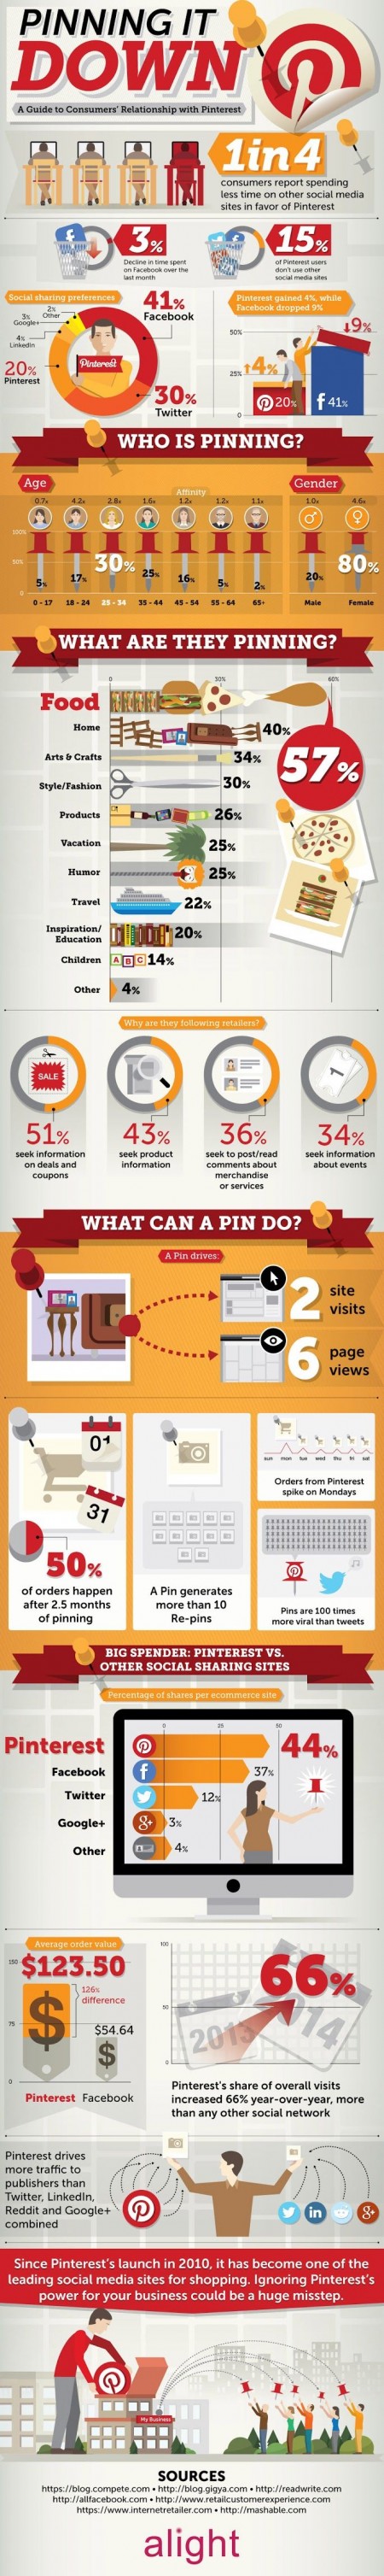 infographie-pinterest-e-commerce-social